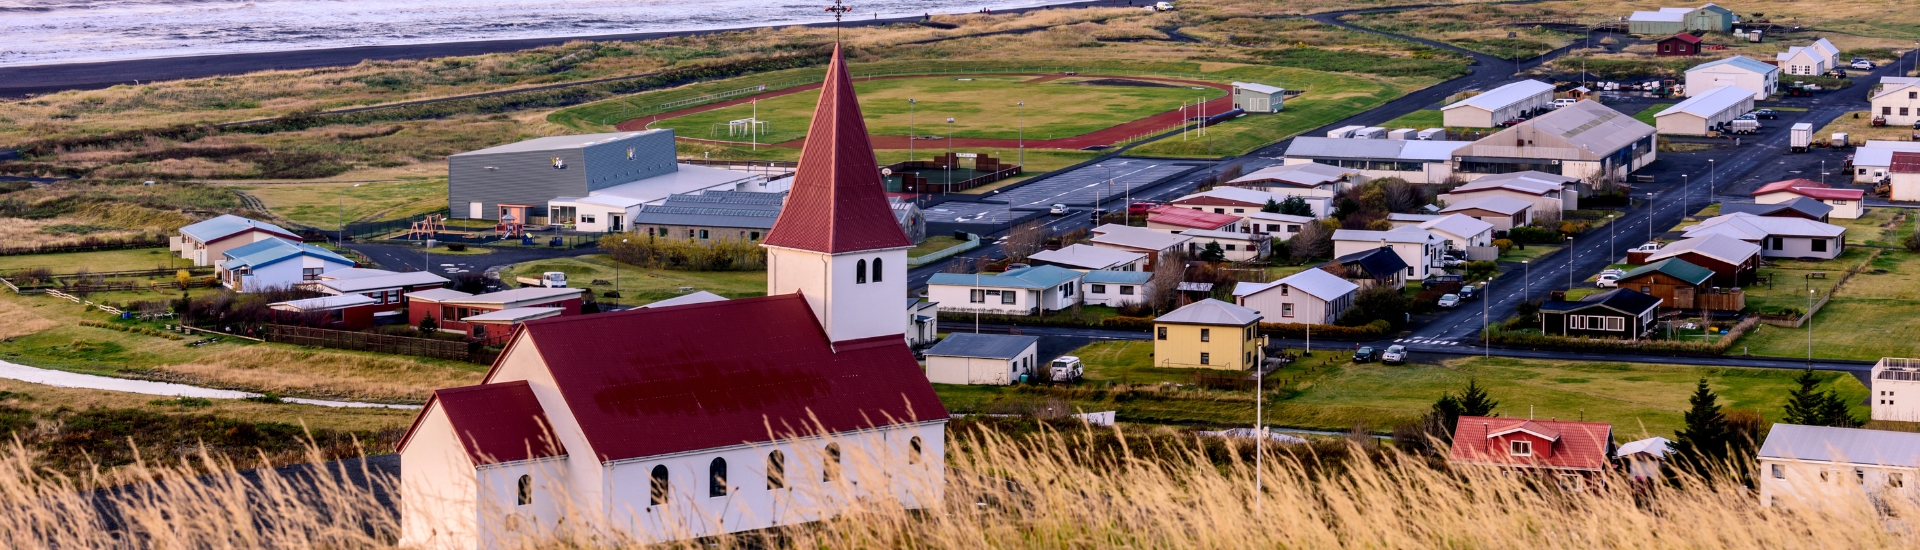 Iceland-Vik-Myrdal Church